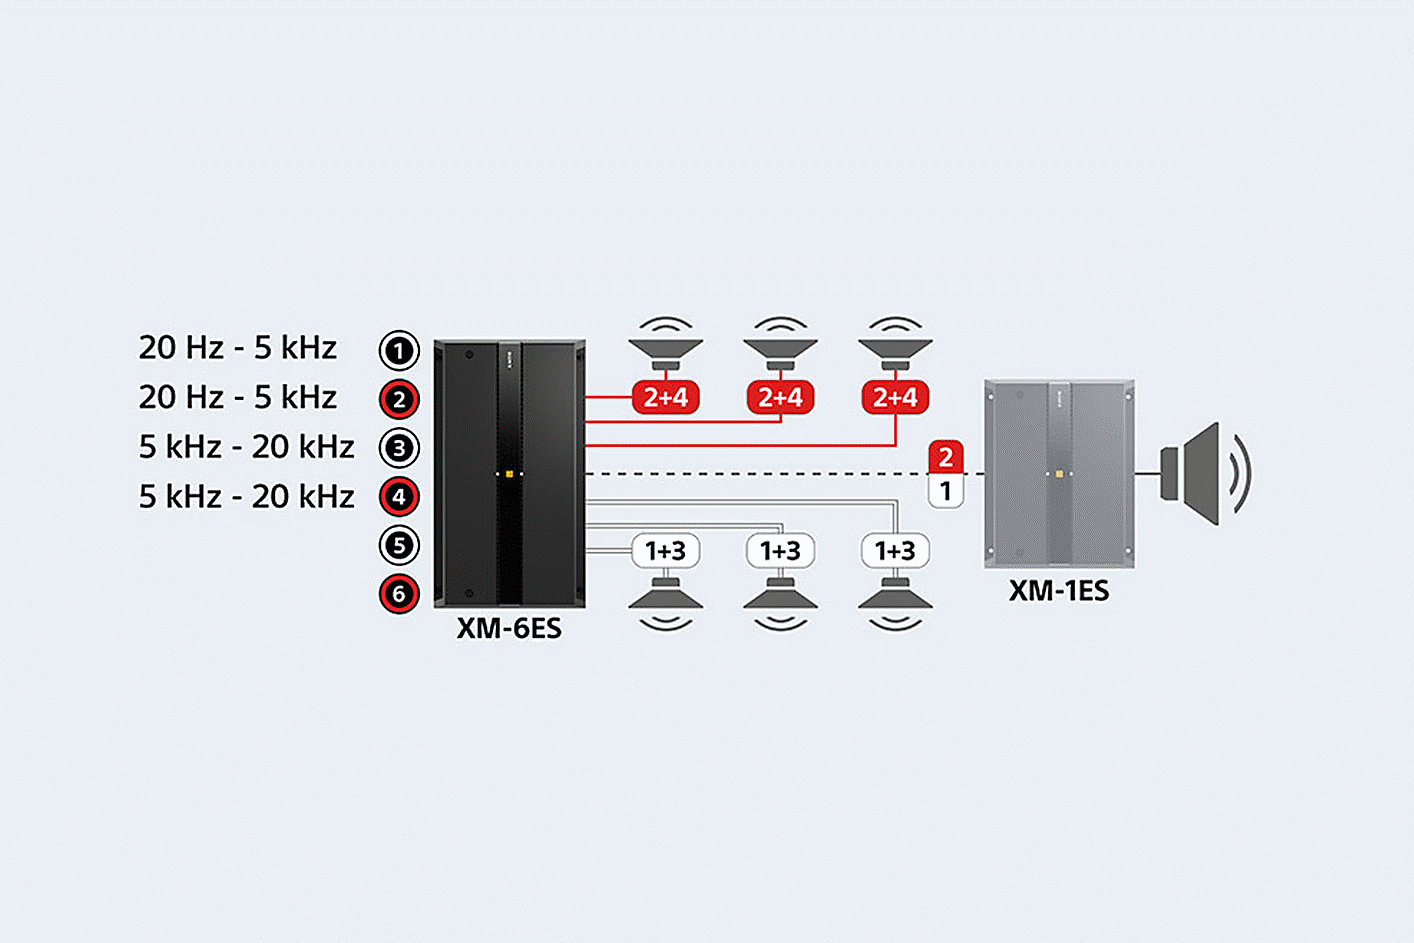 Prie šešių garsiakalbių ir XM-1ES prijungto XM-6ES schema, garso nustatymai rodomi prie 1, 2, 3 ir 4 prievadų.